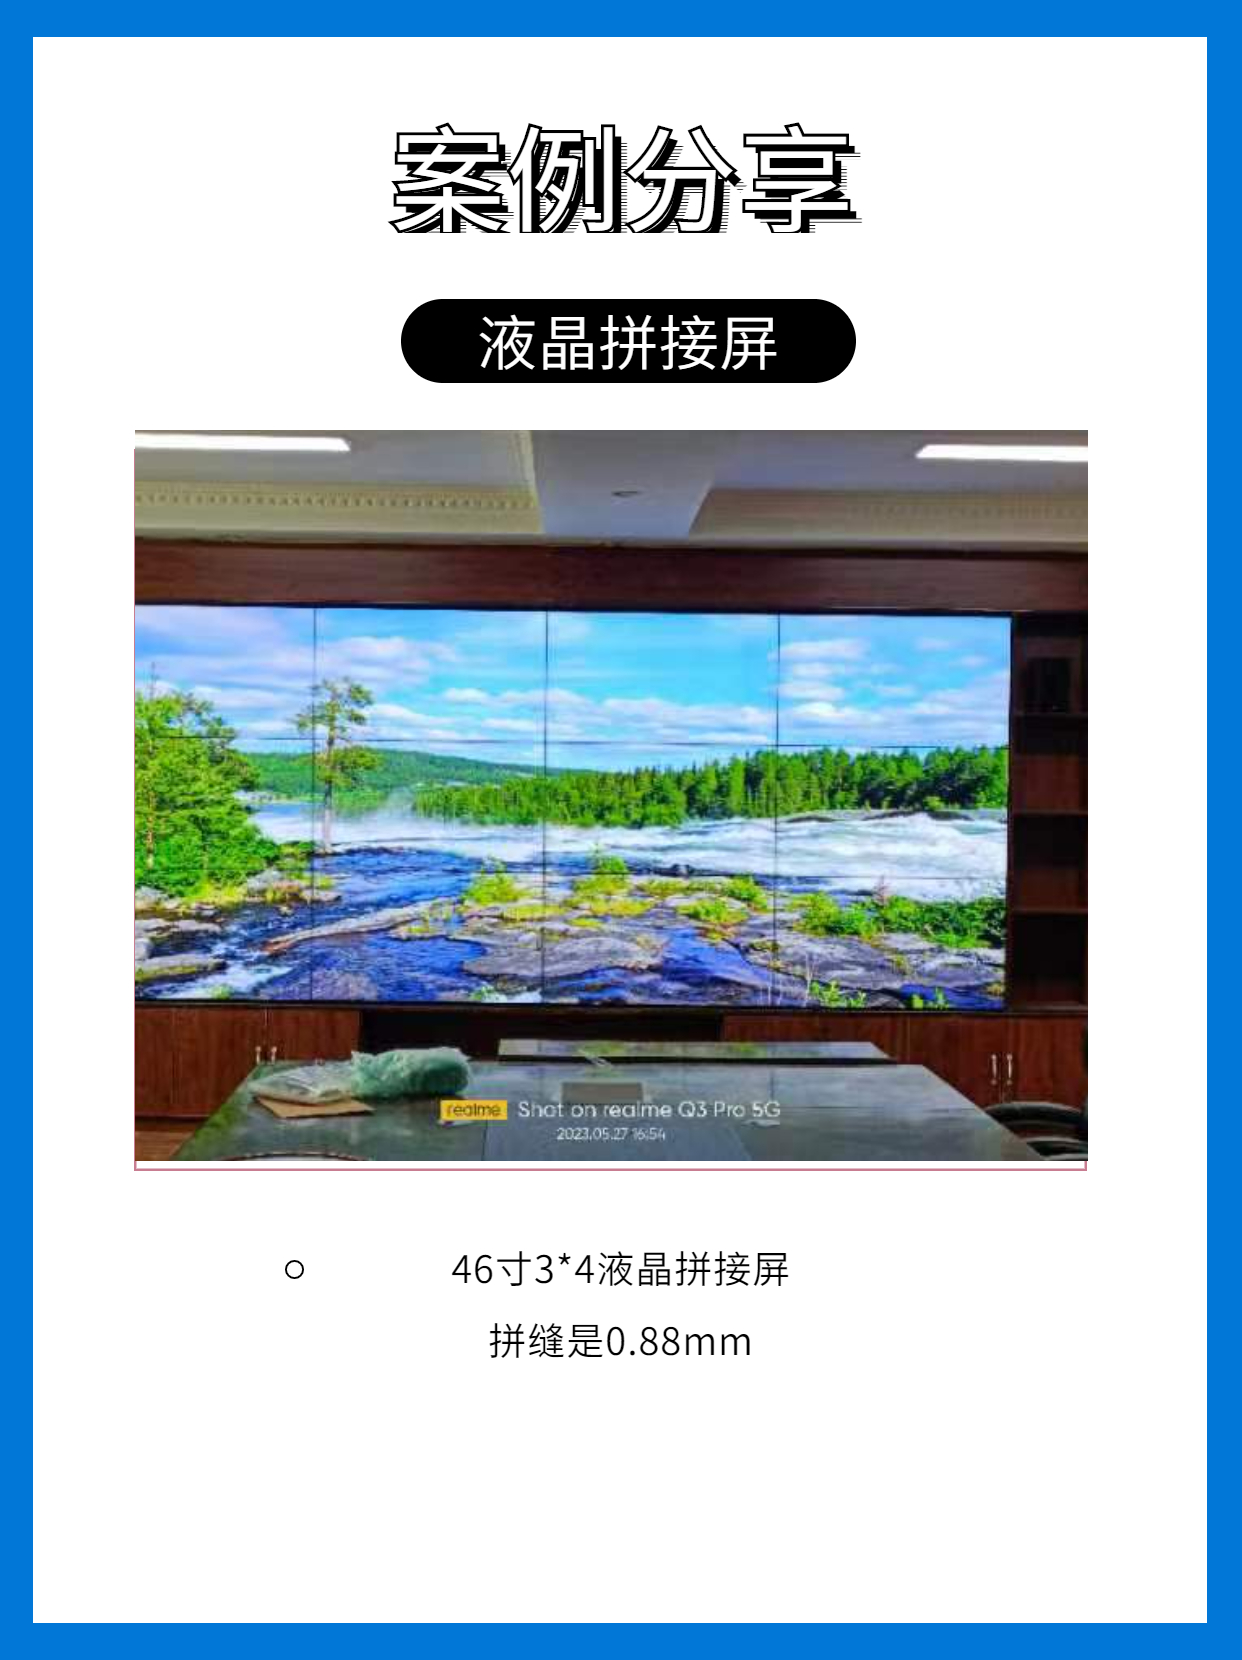 「案例分享」西藏那曲市会议室3✖4液晶拼接屏

# 液晶拼接屏 #会议室大屏 